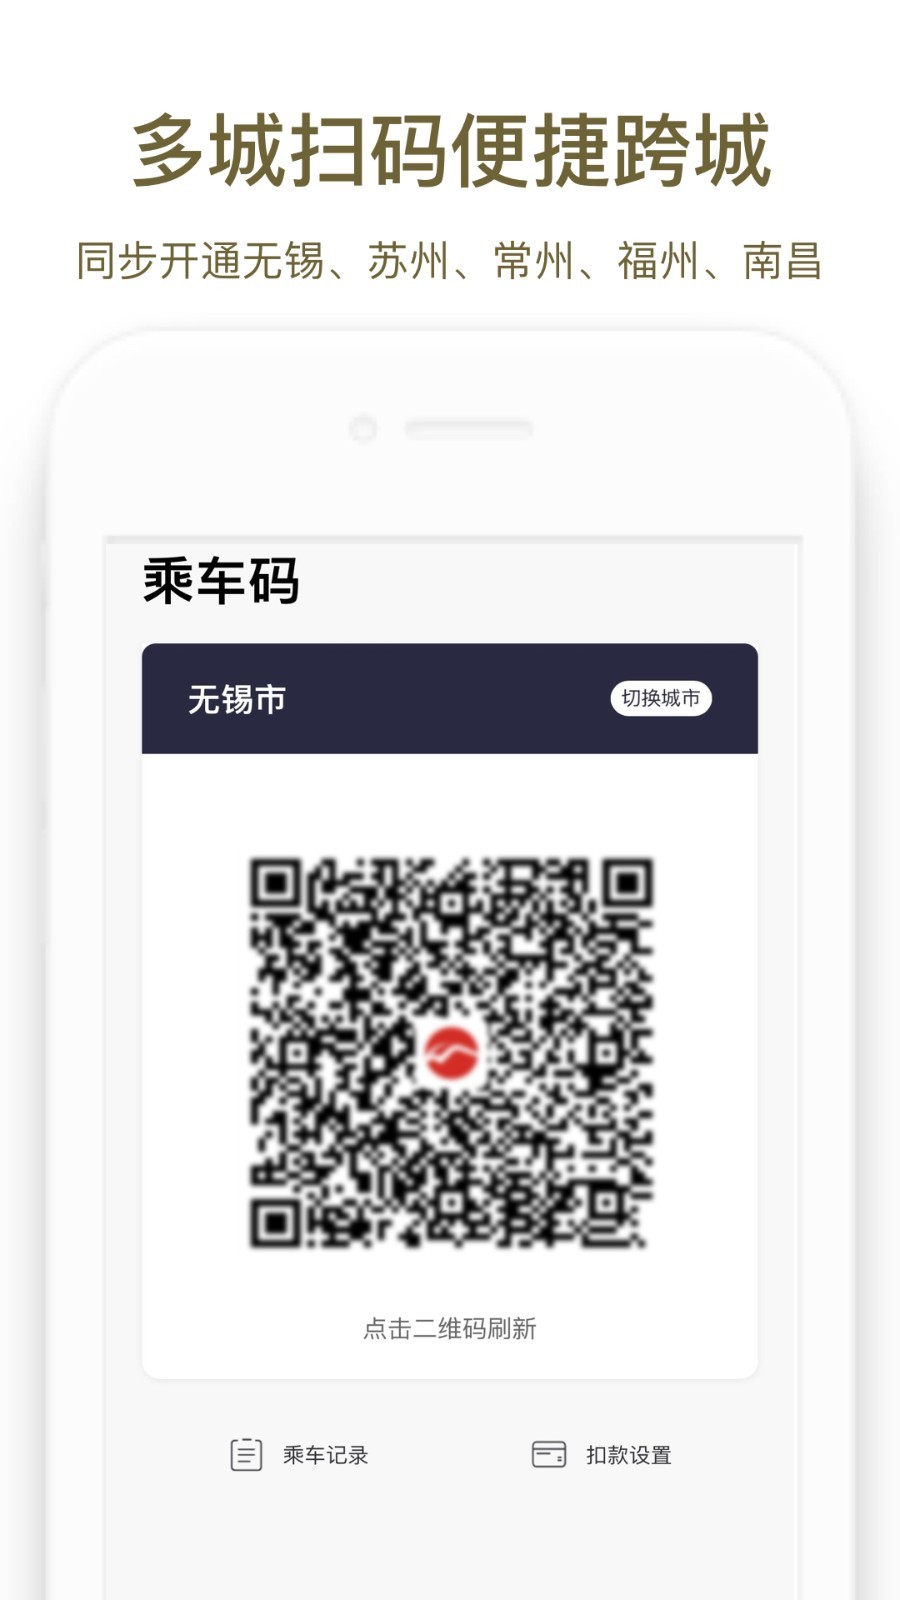 郑州地铁商易行app下载